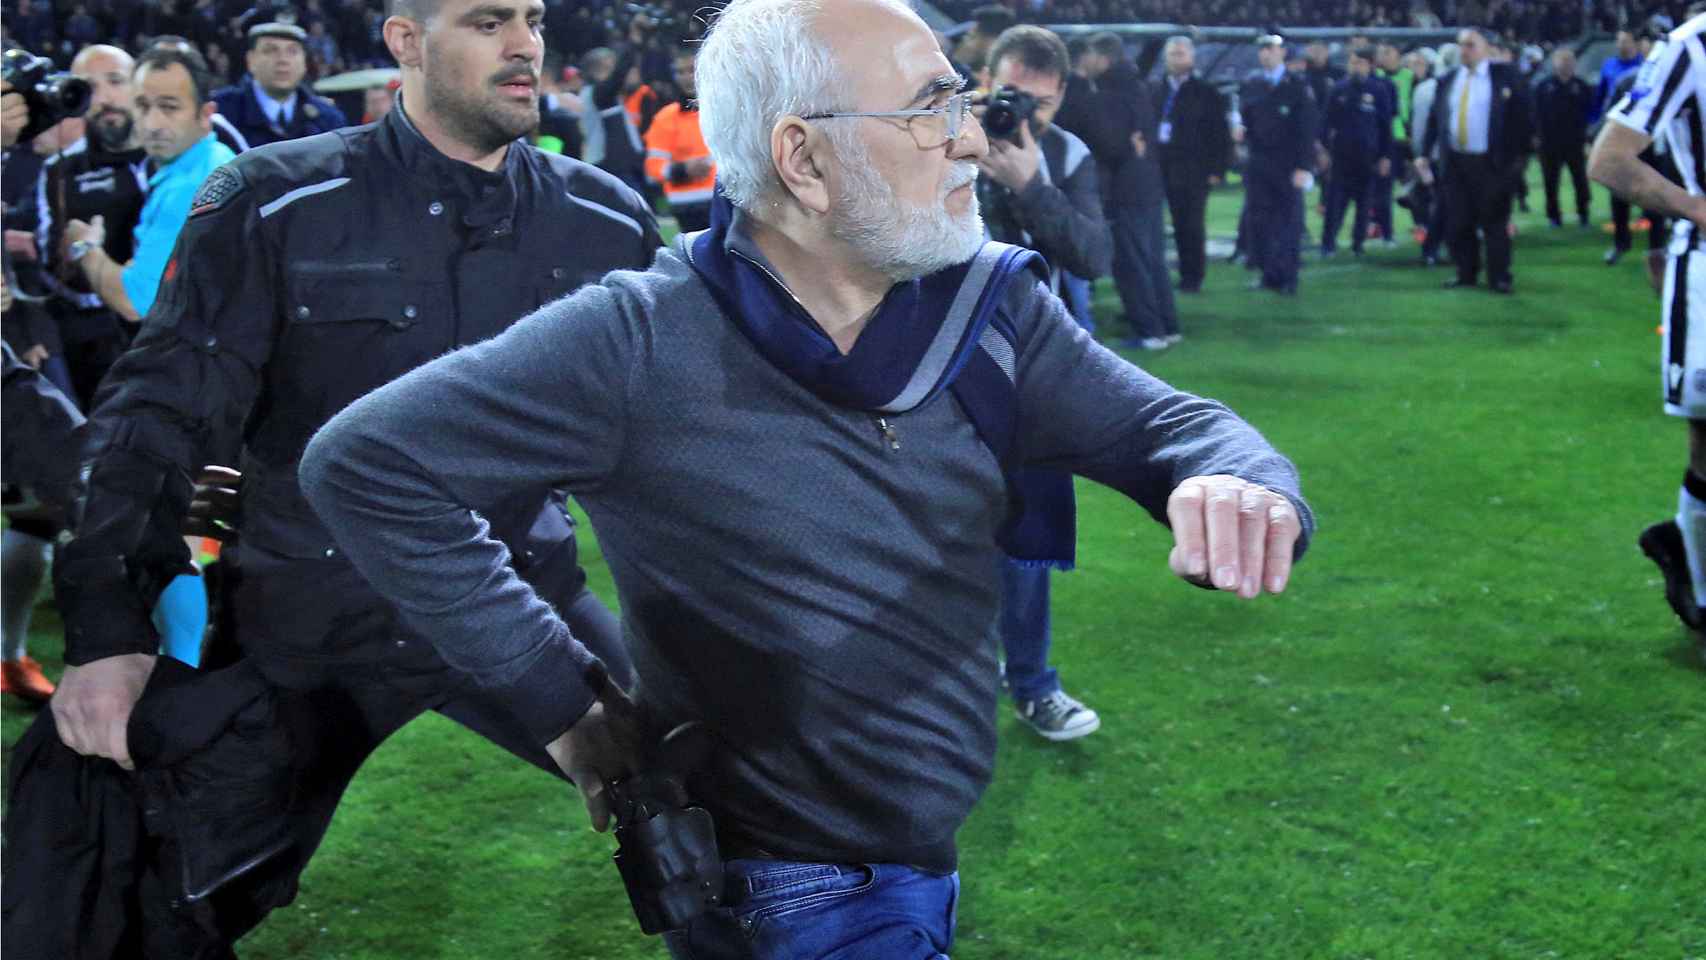 El presidente del PAOK al saltar al campo con su pistola.